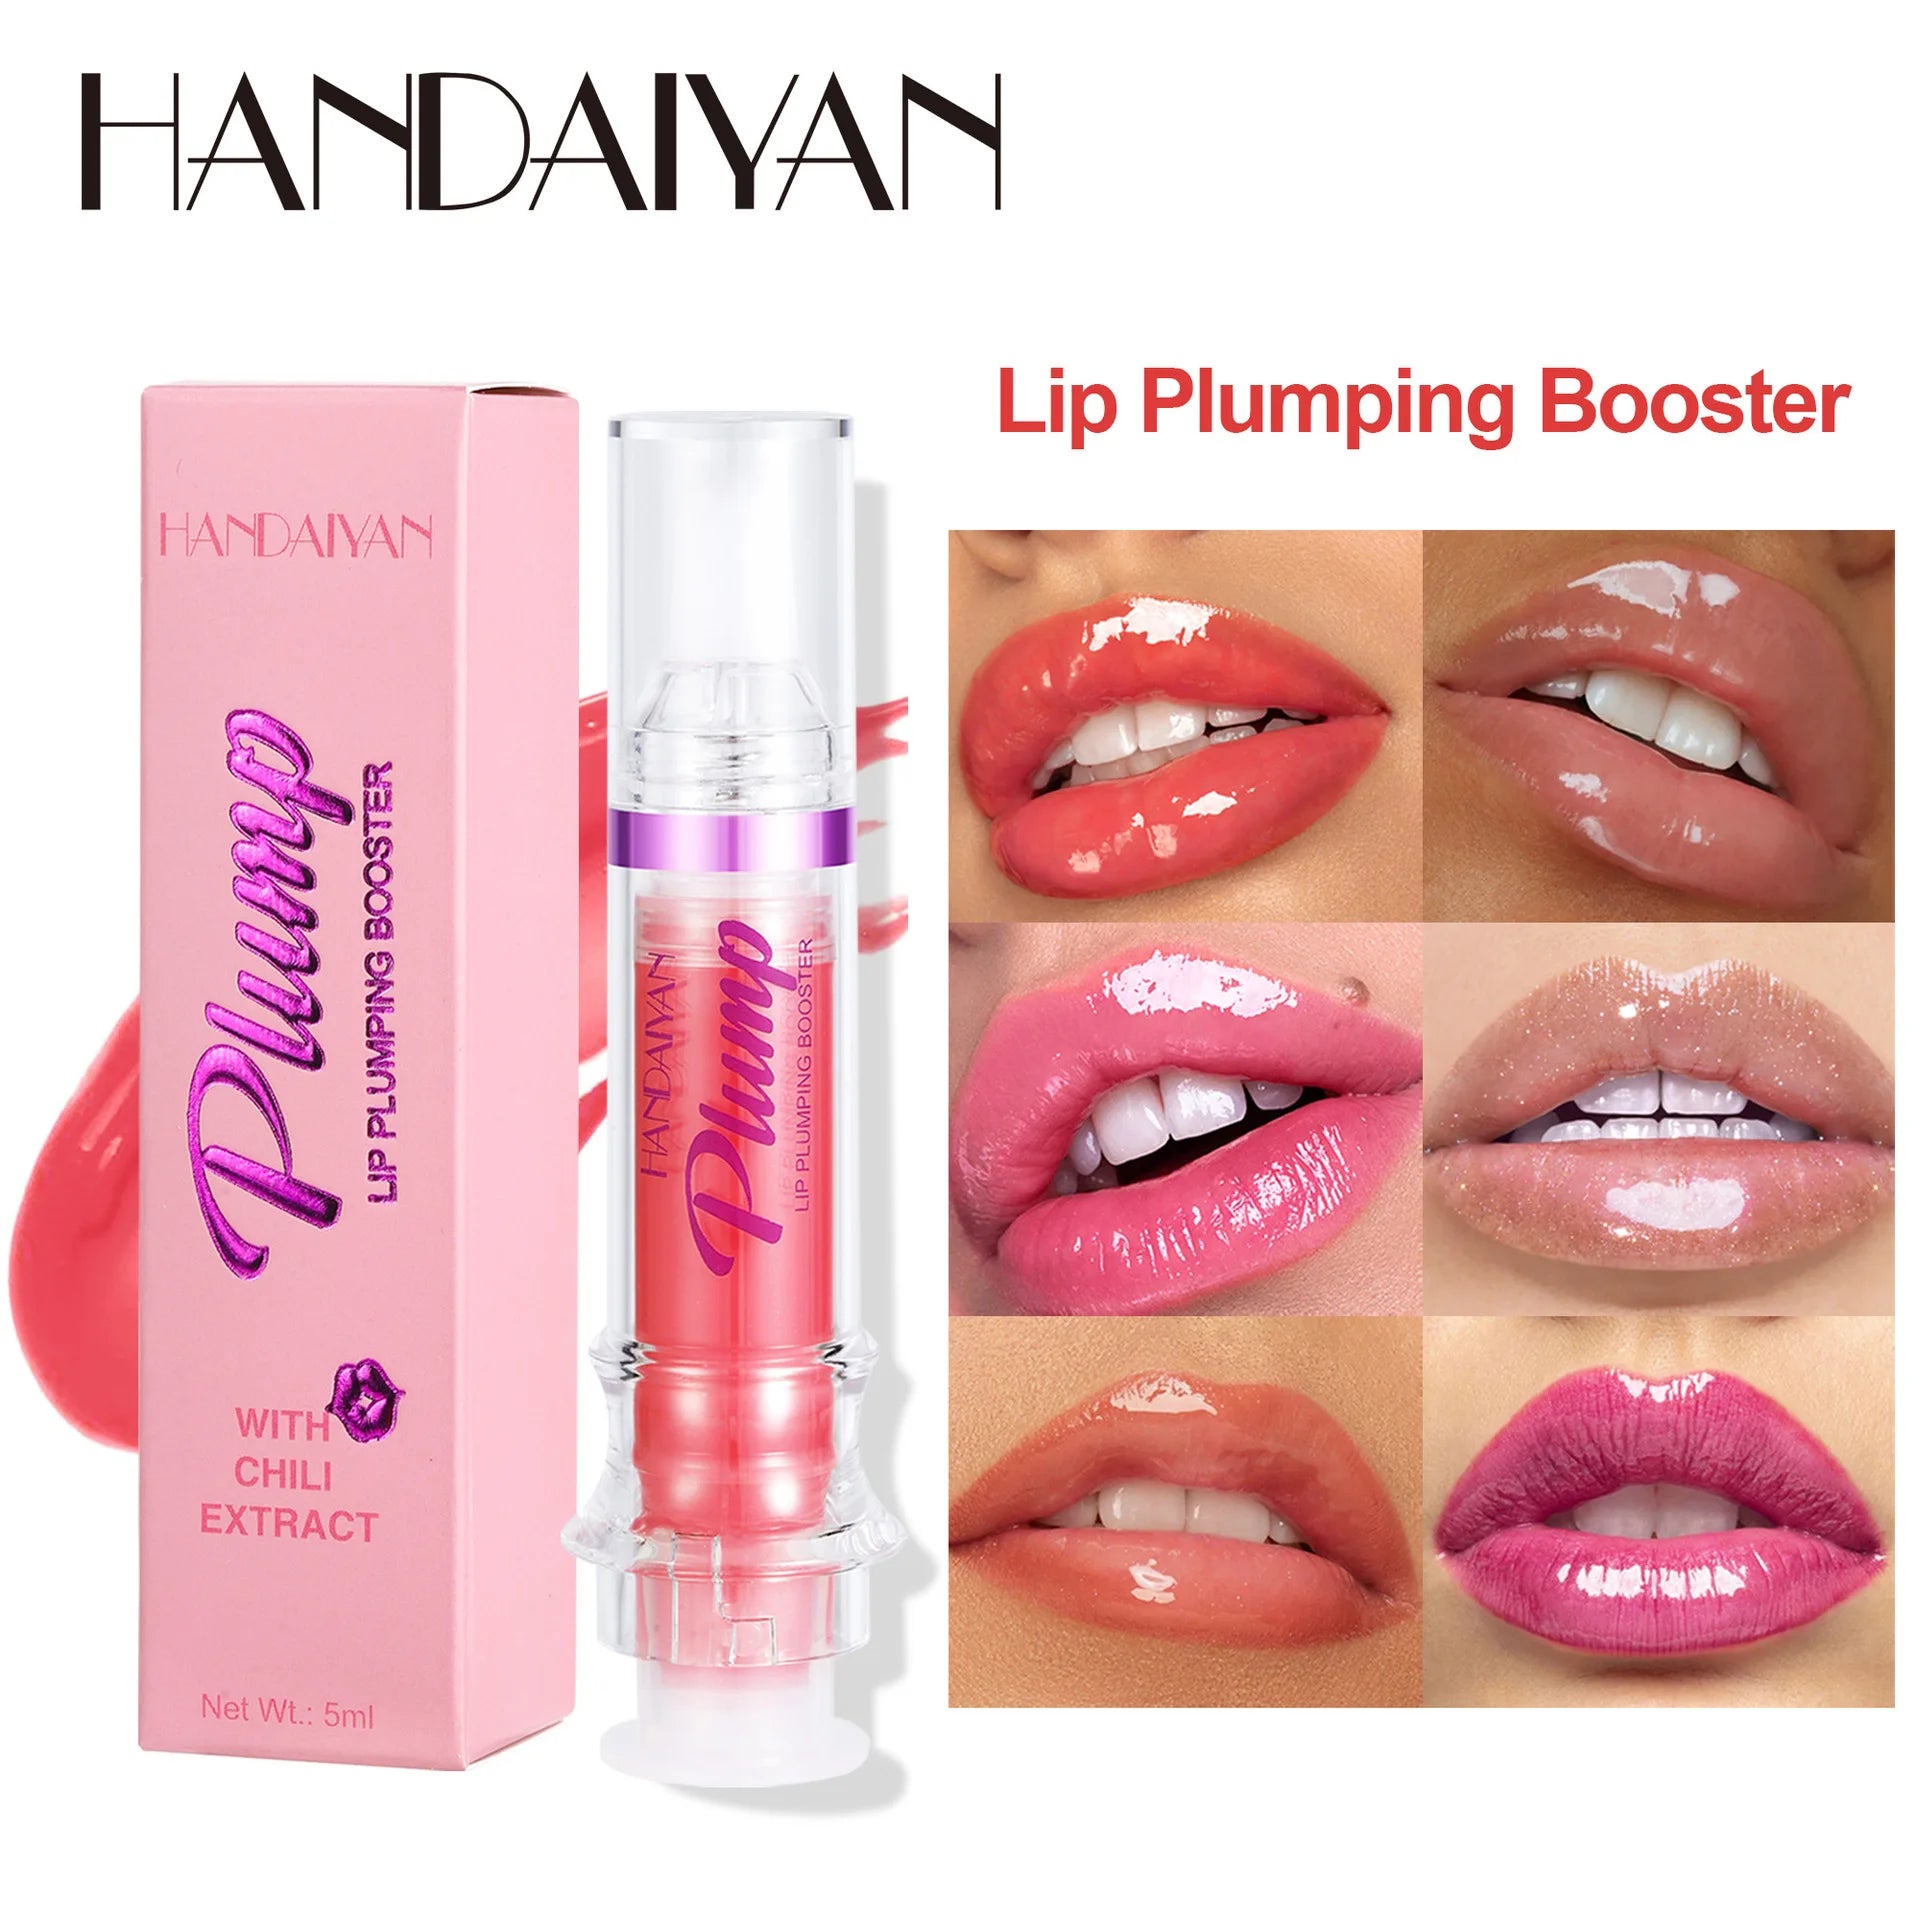 Handaiyan Lip Plumping Booster Sexy Plumper Glitter Red Nude Lipstick Liquid Waterproof Moisturize Oil Lipgloss Makeup